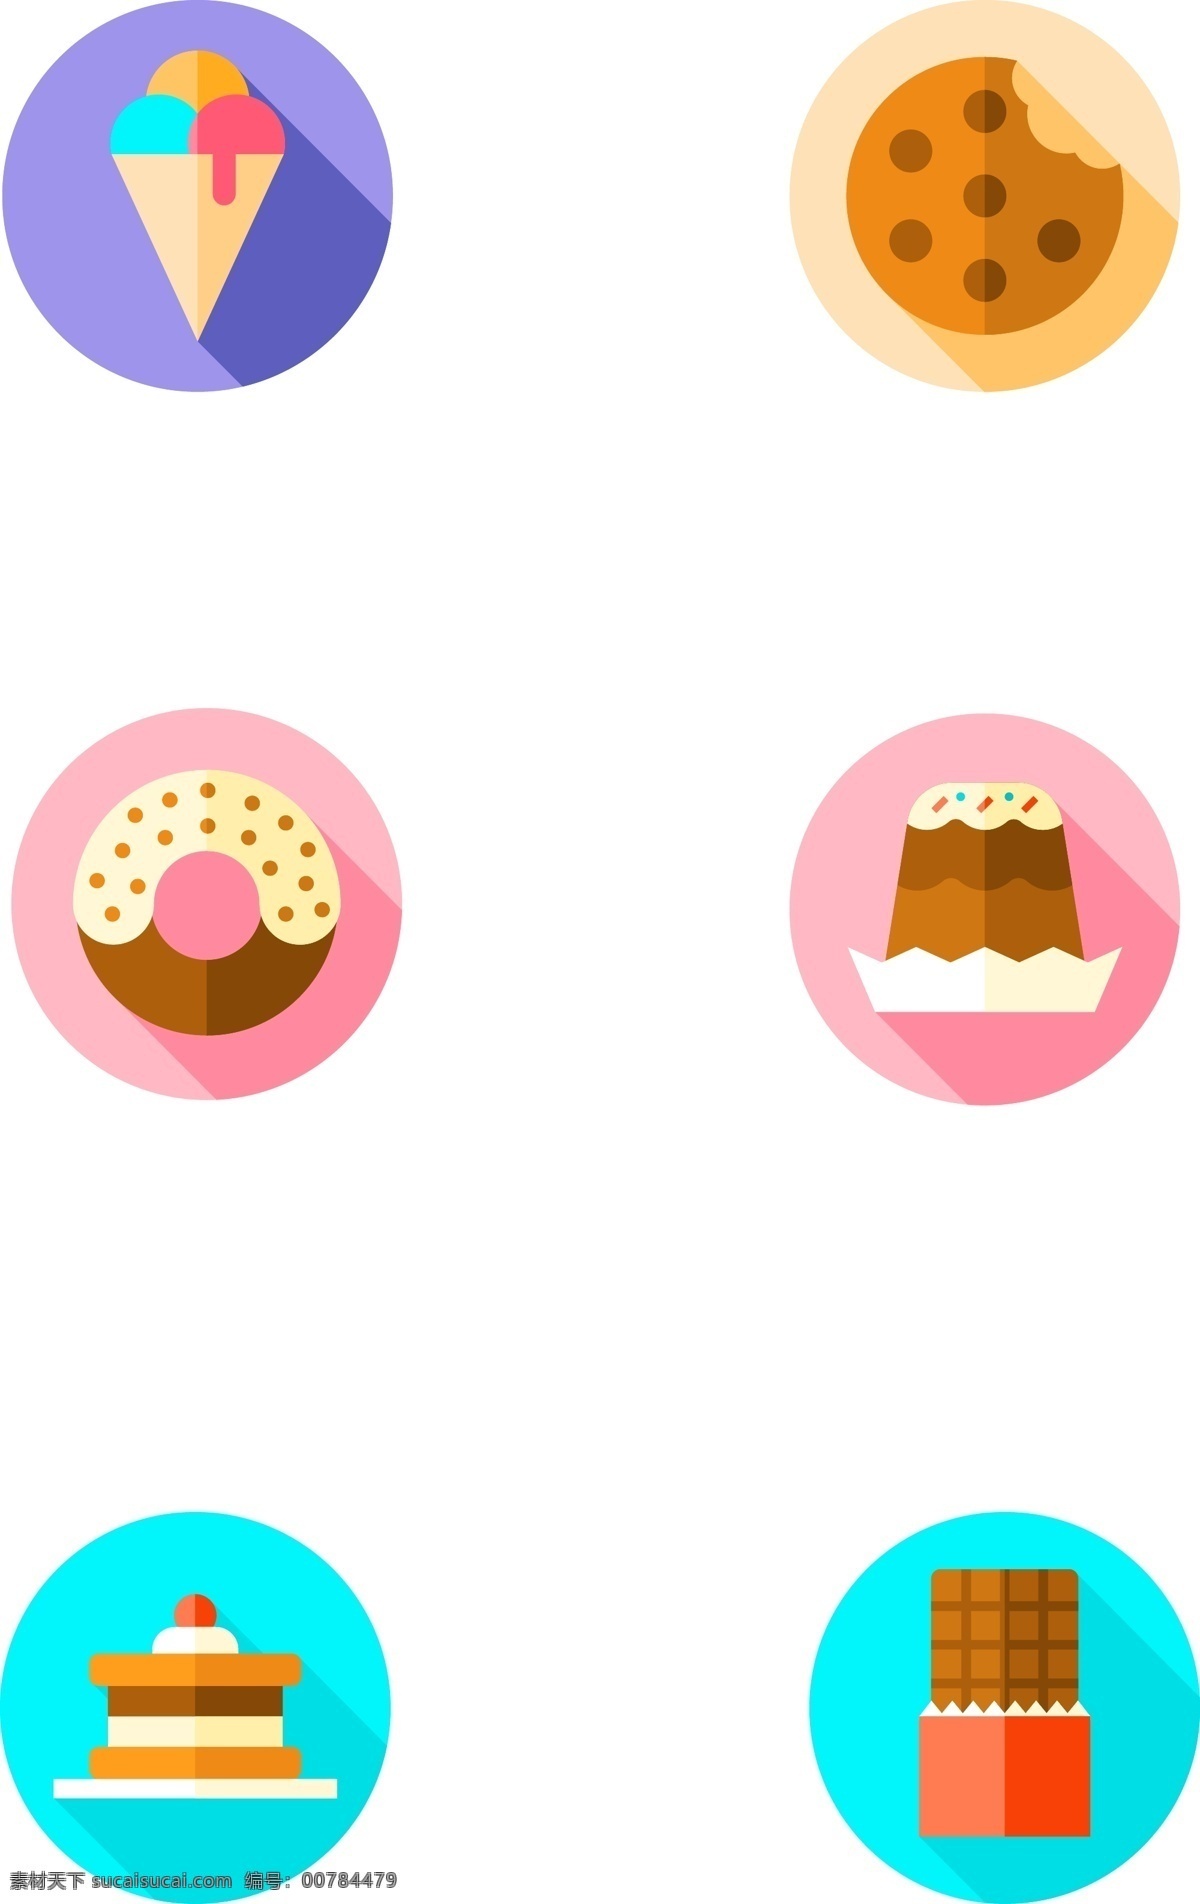 好吃 甜品 甜食 相关 图标 扁平化 拟物 好吃的 美味的 食物 雪糕 曲奇 甜甜圈 蛋糕 巧克力 有趣的 可爱的